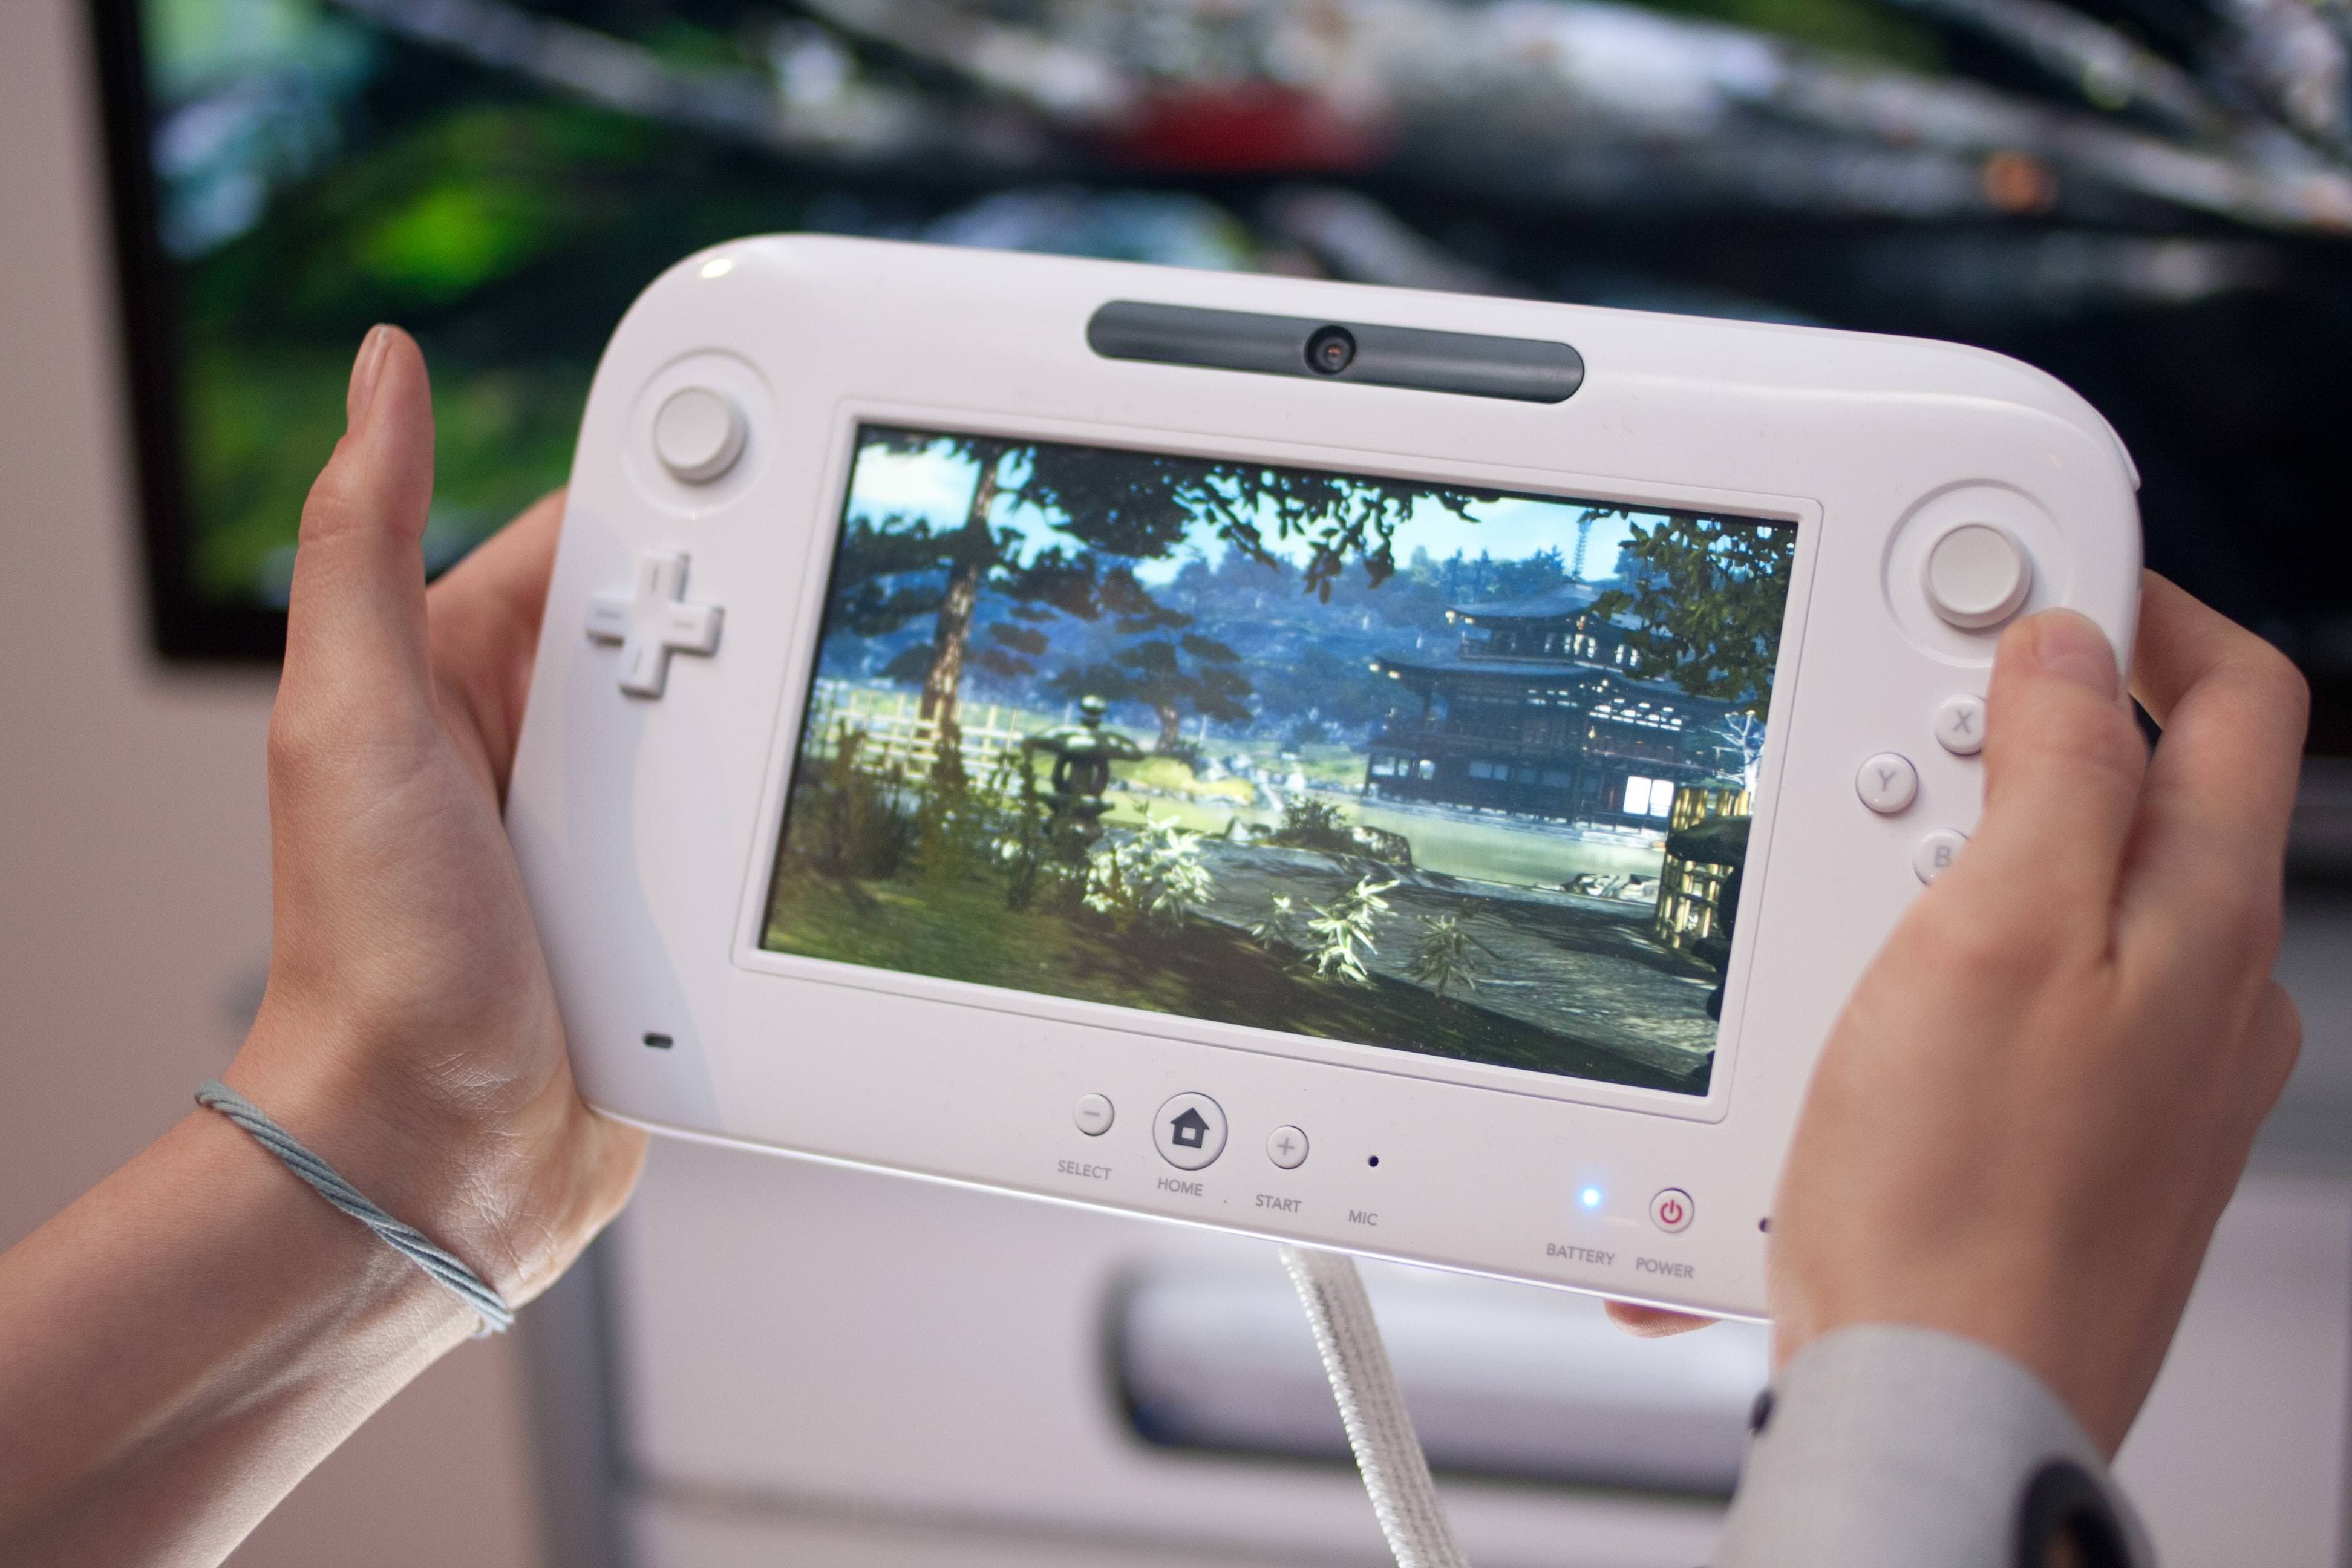 Sony confirma la adquisición de la factoría de producción de eDRAM para Wii U